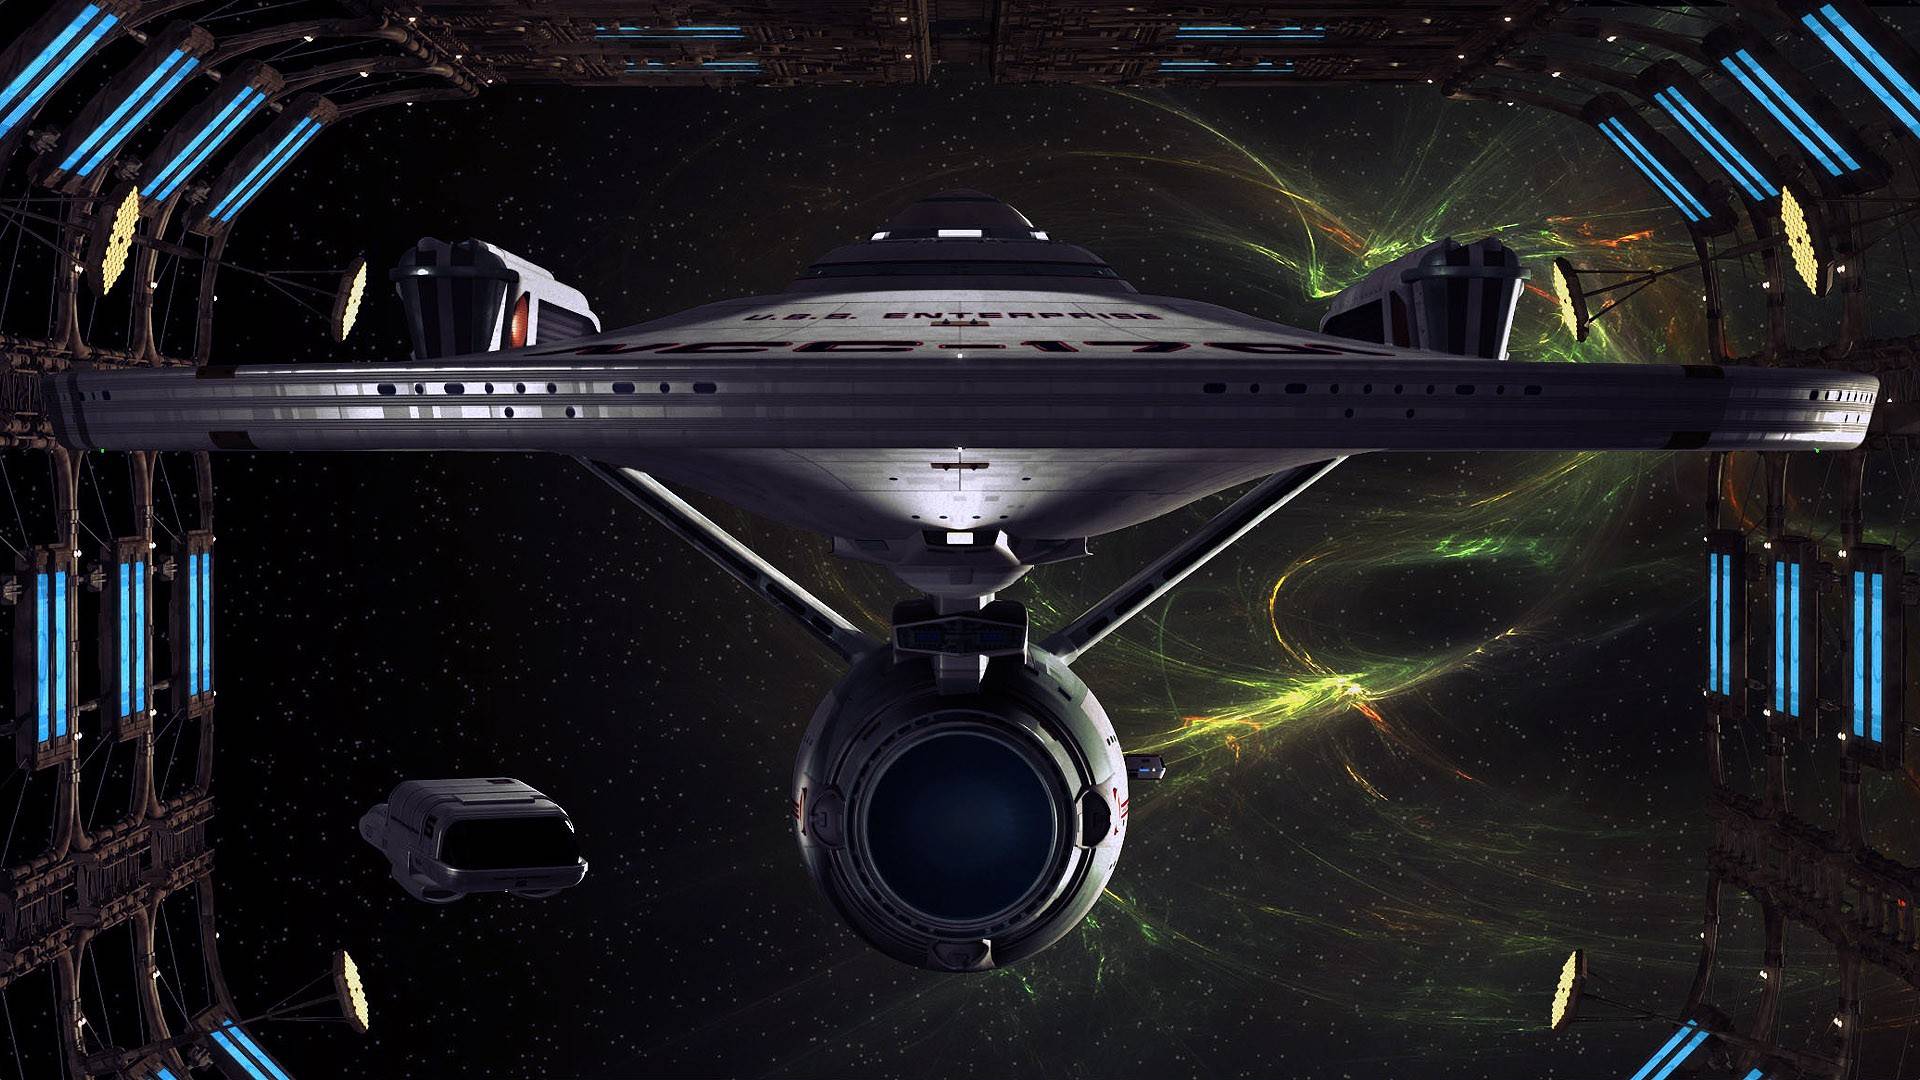 Uss Enterprise Star Trek Wallpaper